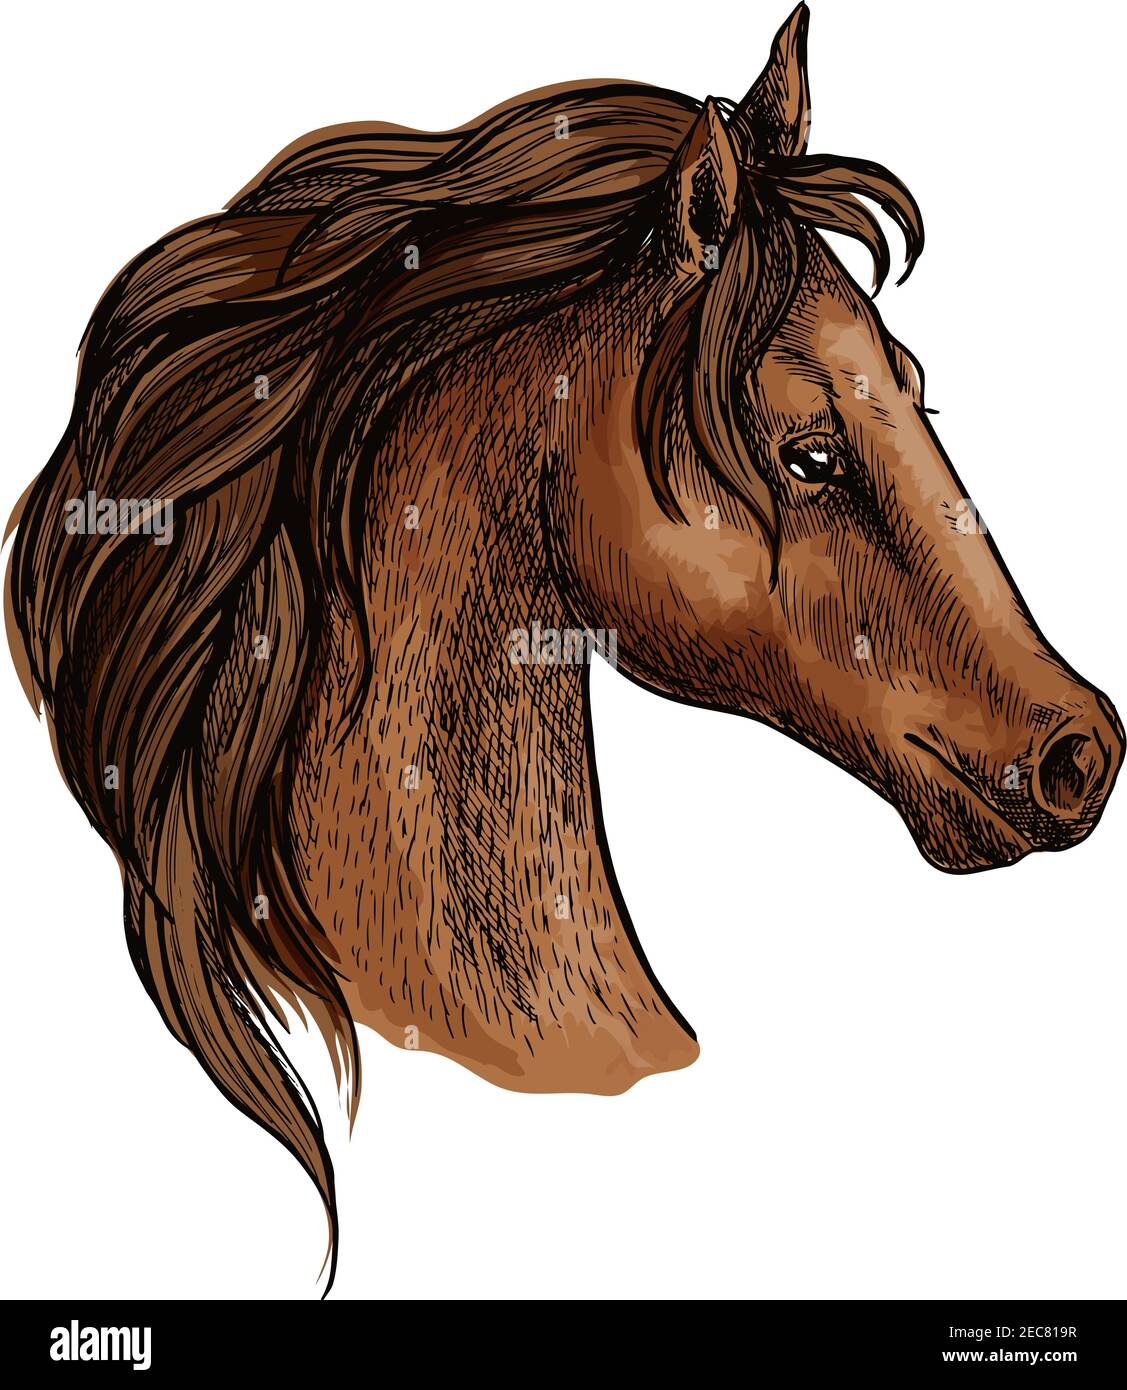 Pferd Kopf Profil Porträt. Stolzer brauner Mustang mit langer welliger Mähne und nachdenklichen nachdenklichen Augen Stock Vektor